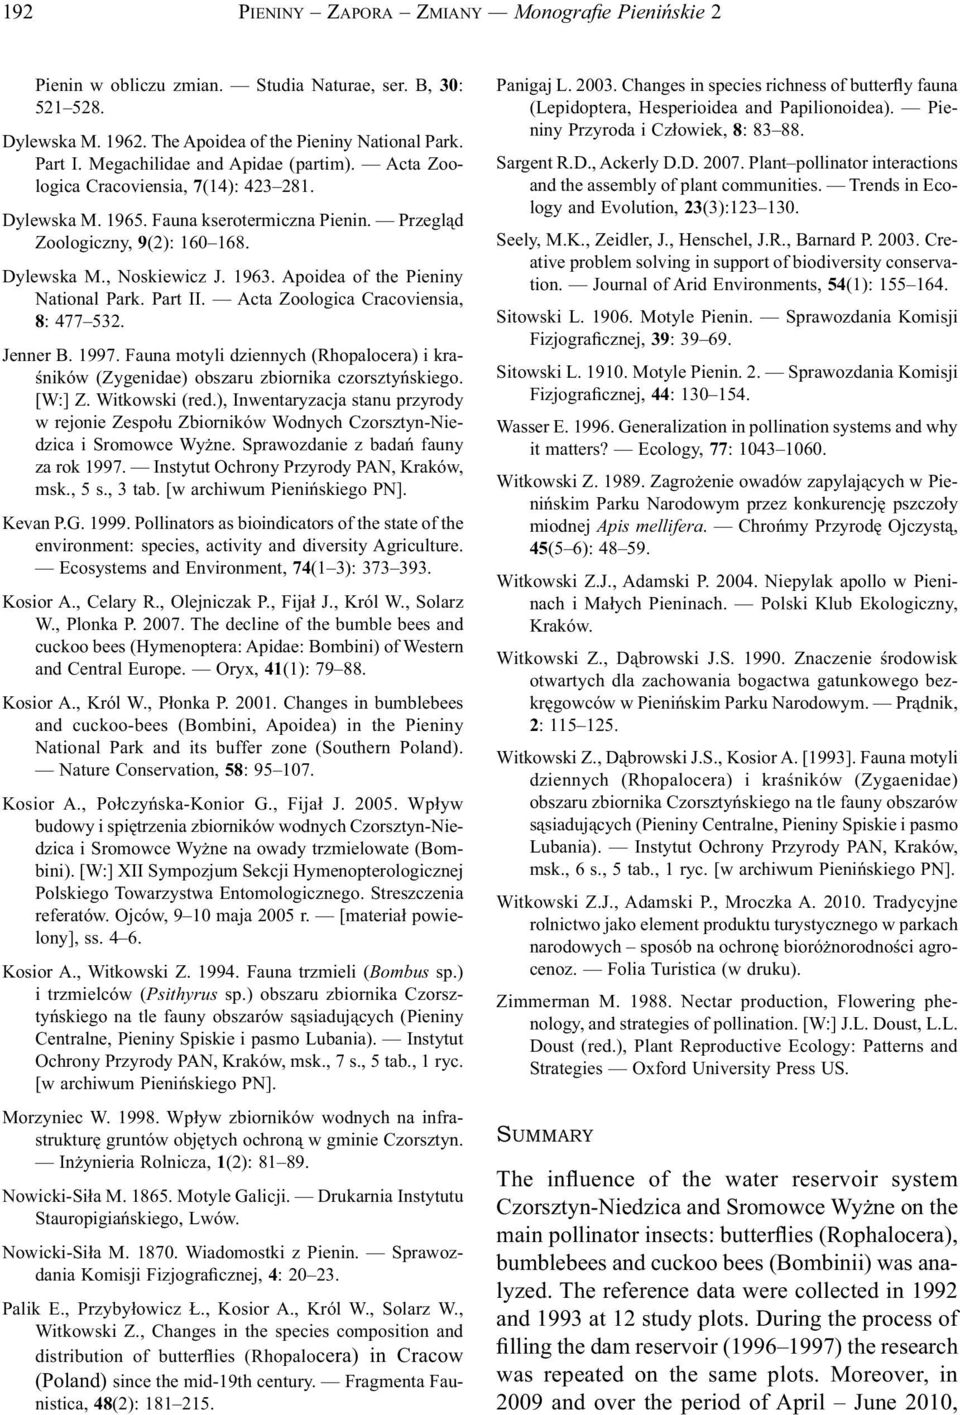 Apoidea of the Pieniny National Park. Part II. Acta Zoologica Cracoviensia, 8: 477 532. Jenner B. 1997. Fauna motyli dziennych (Rhopalocera) i kraśników (Zygenidae) obszaru zbiornika czorsztyńskiego.